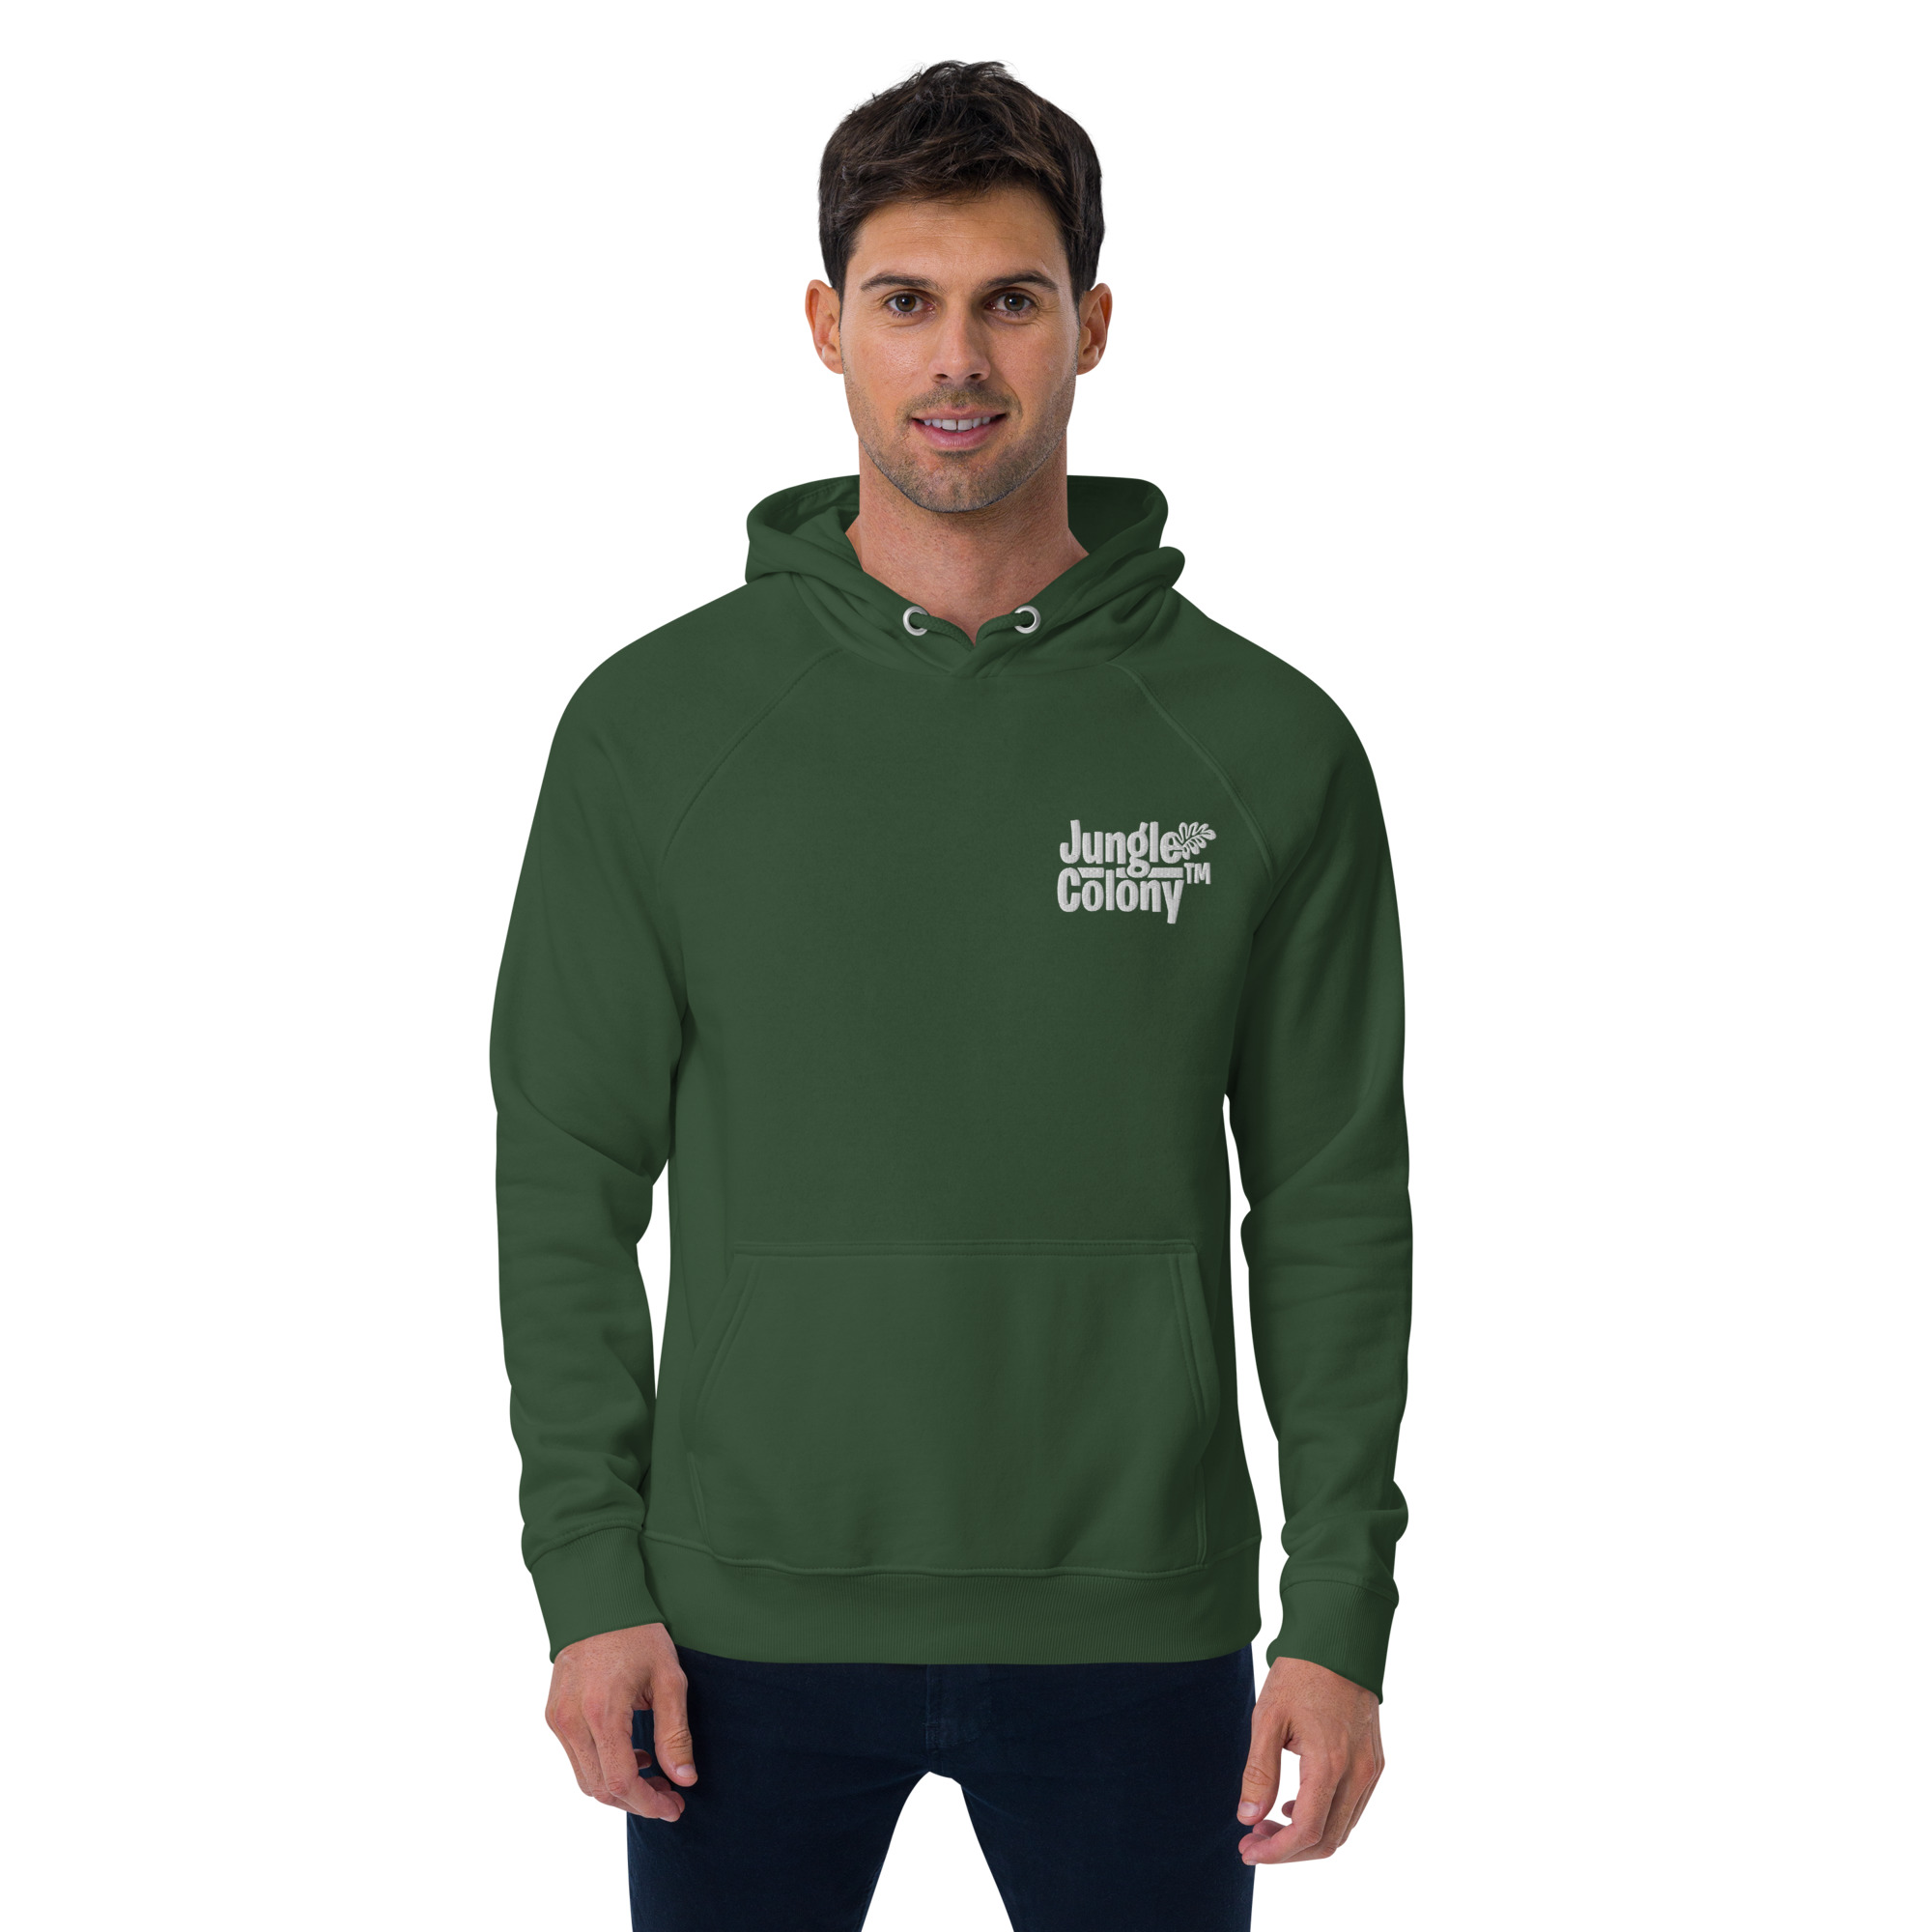 unisex-eco-raglan-hoodie-bottle-green-front-6420086c87d54.jpg